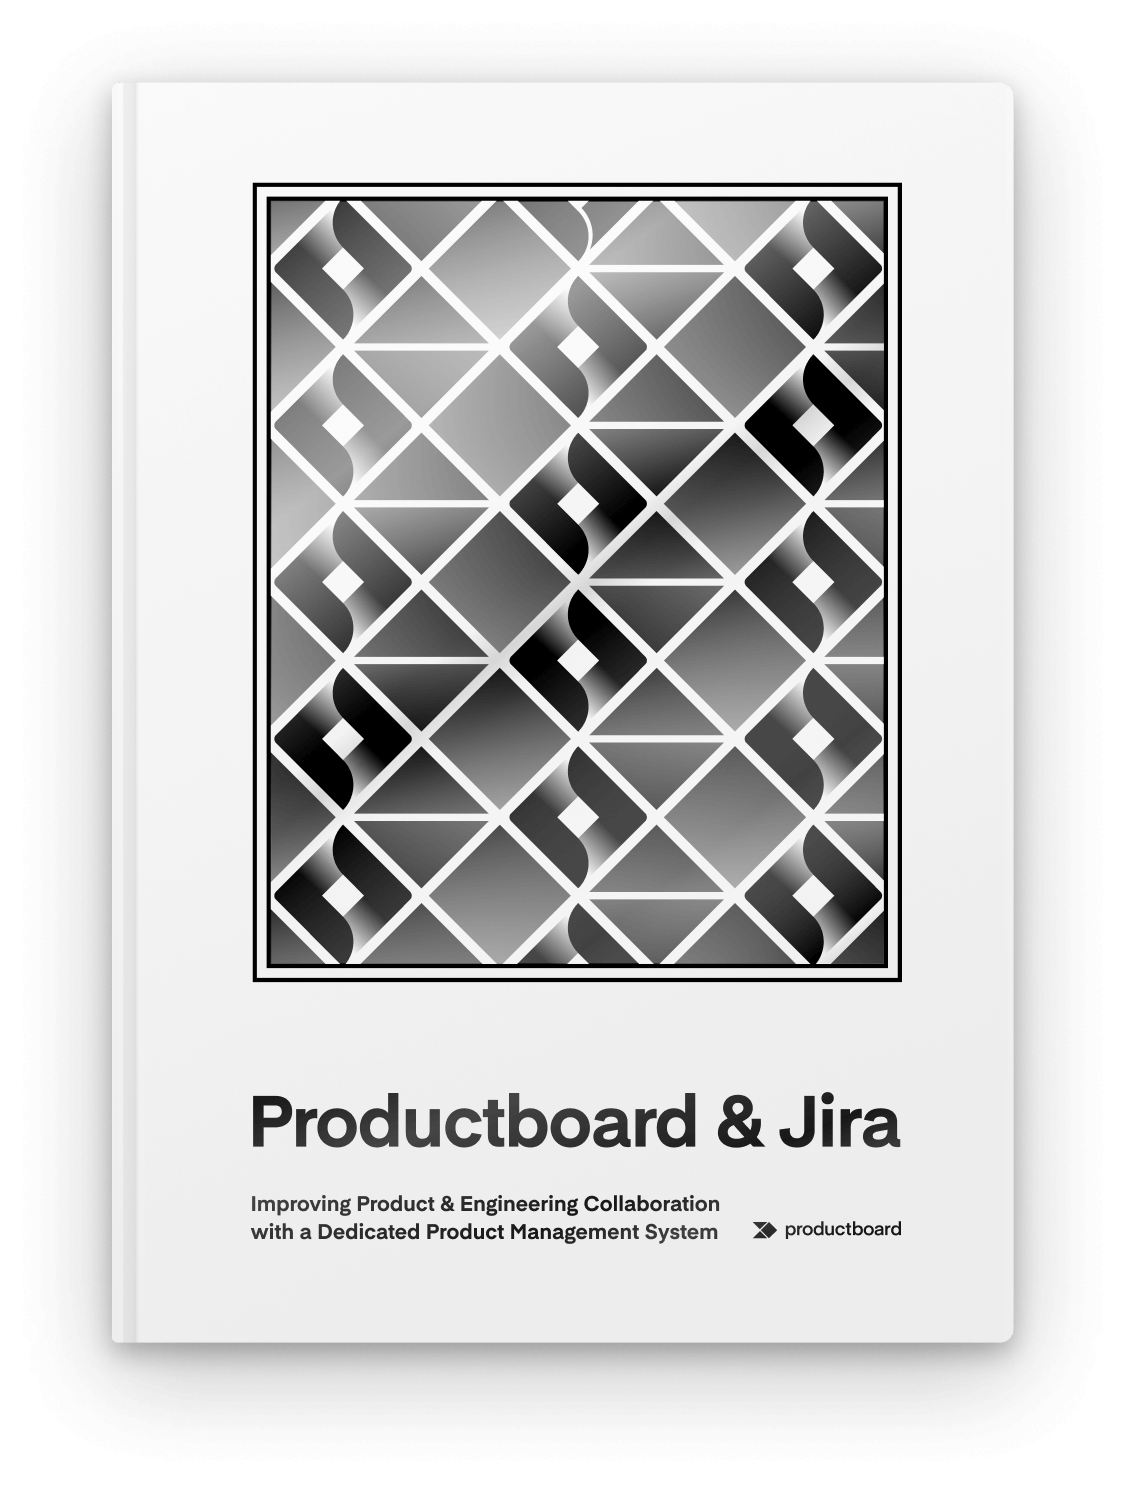 Productboard & Jira